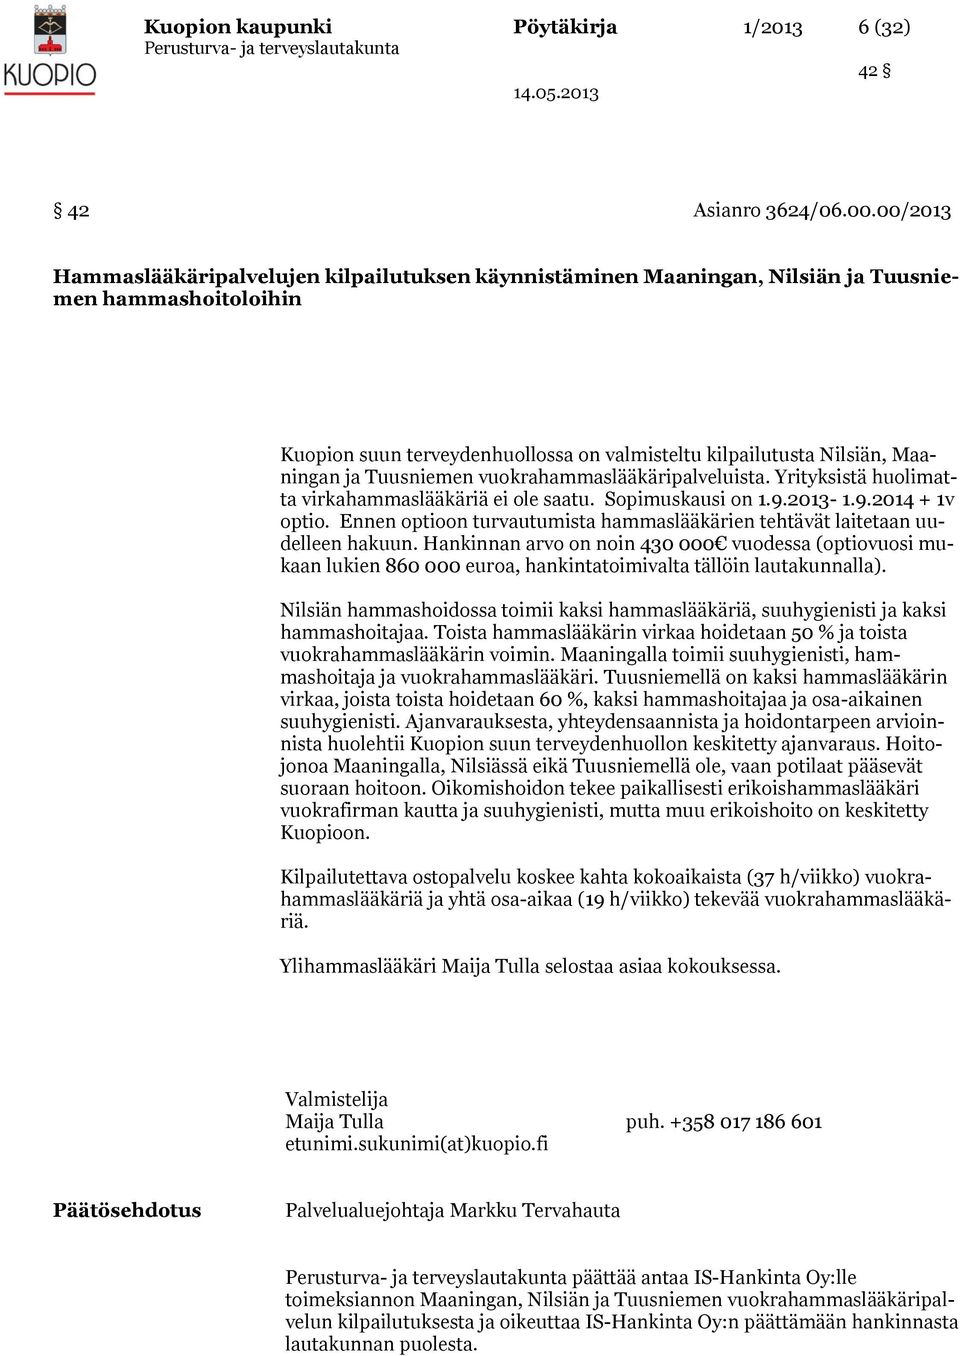 Tuusniemen vuokrahammaslääkäripalveluista. Yrityksistä huolimatta virkahammaslääkäriä ei ole saatu. Sopimuskausi on 1.9.2013-1.9.2014 + 1v optio.